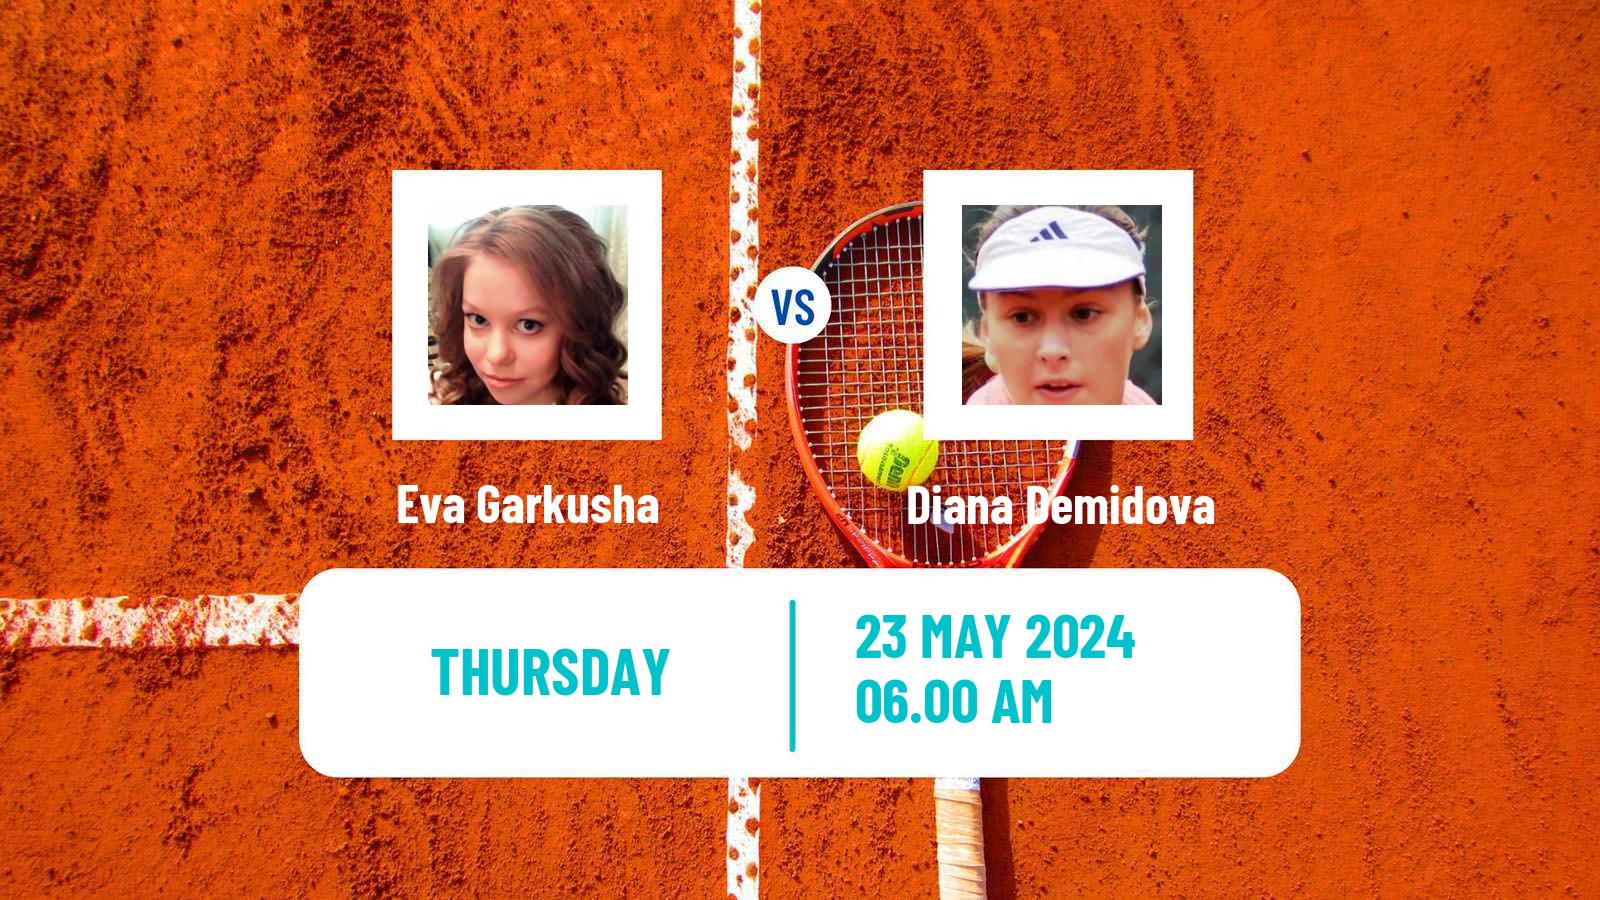 Tennis ITF W15 Monastir 19 Women Eva Garkusha - Diana Demidova